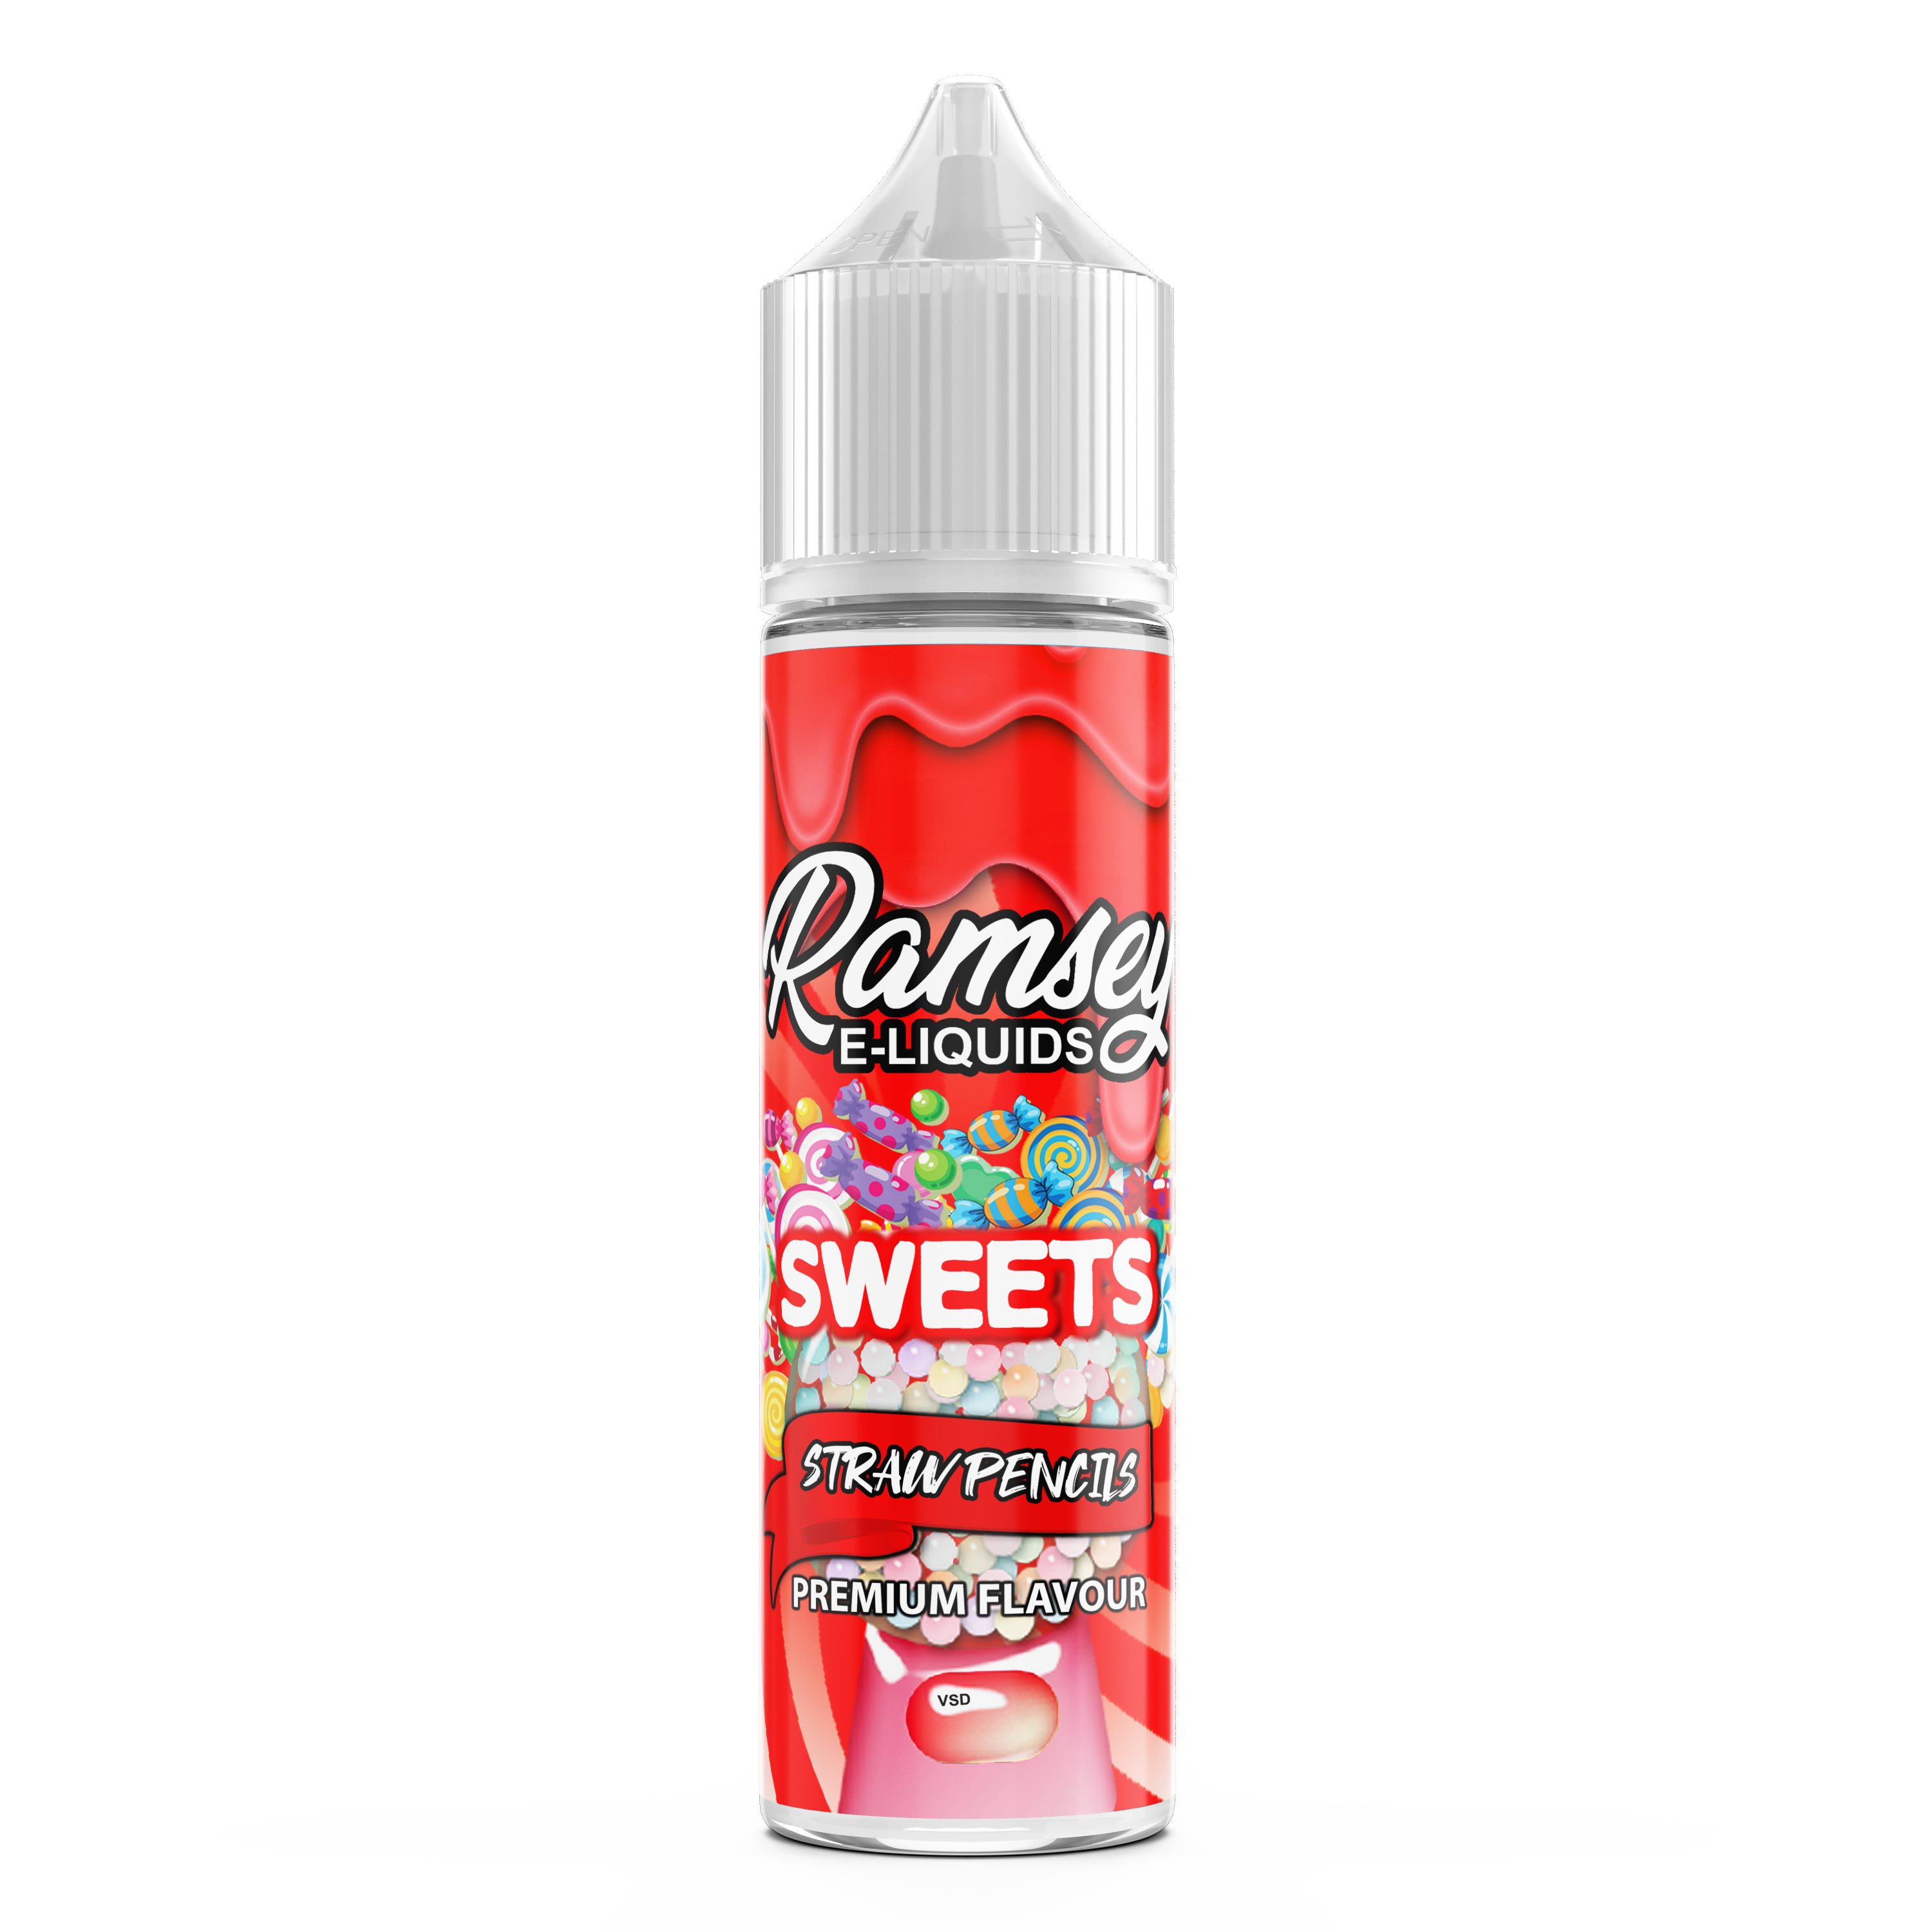 Ramsey E-Liquids Sweets Strawpencils 0mg 50ml Shortfill E-Liquid